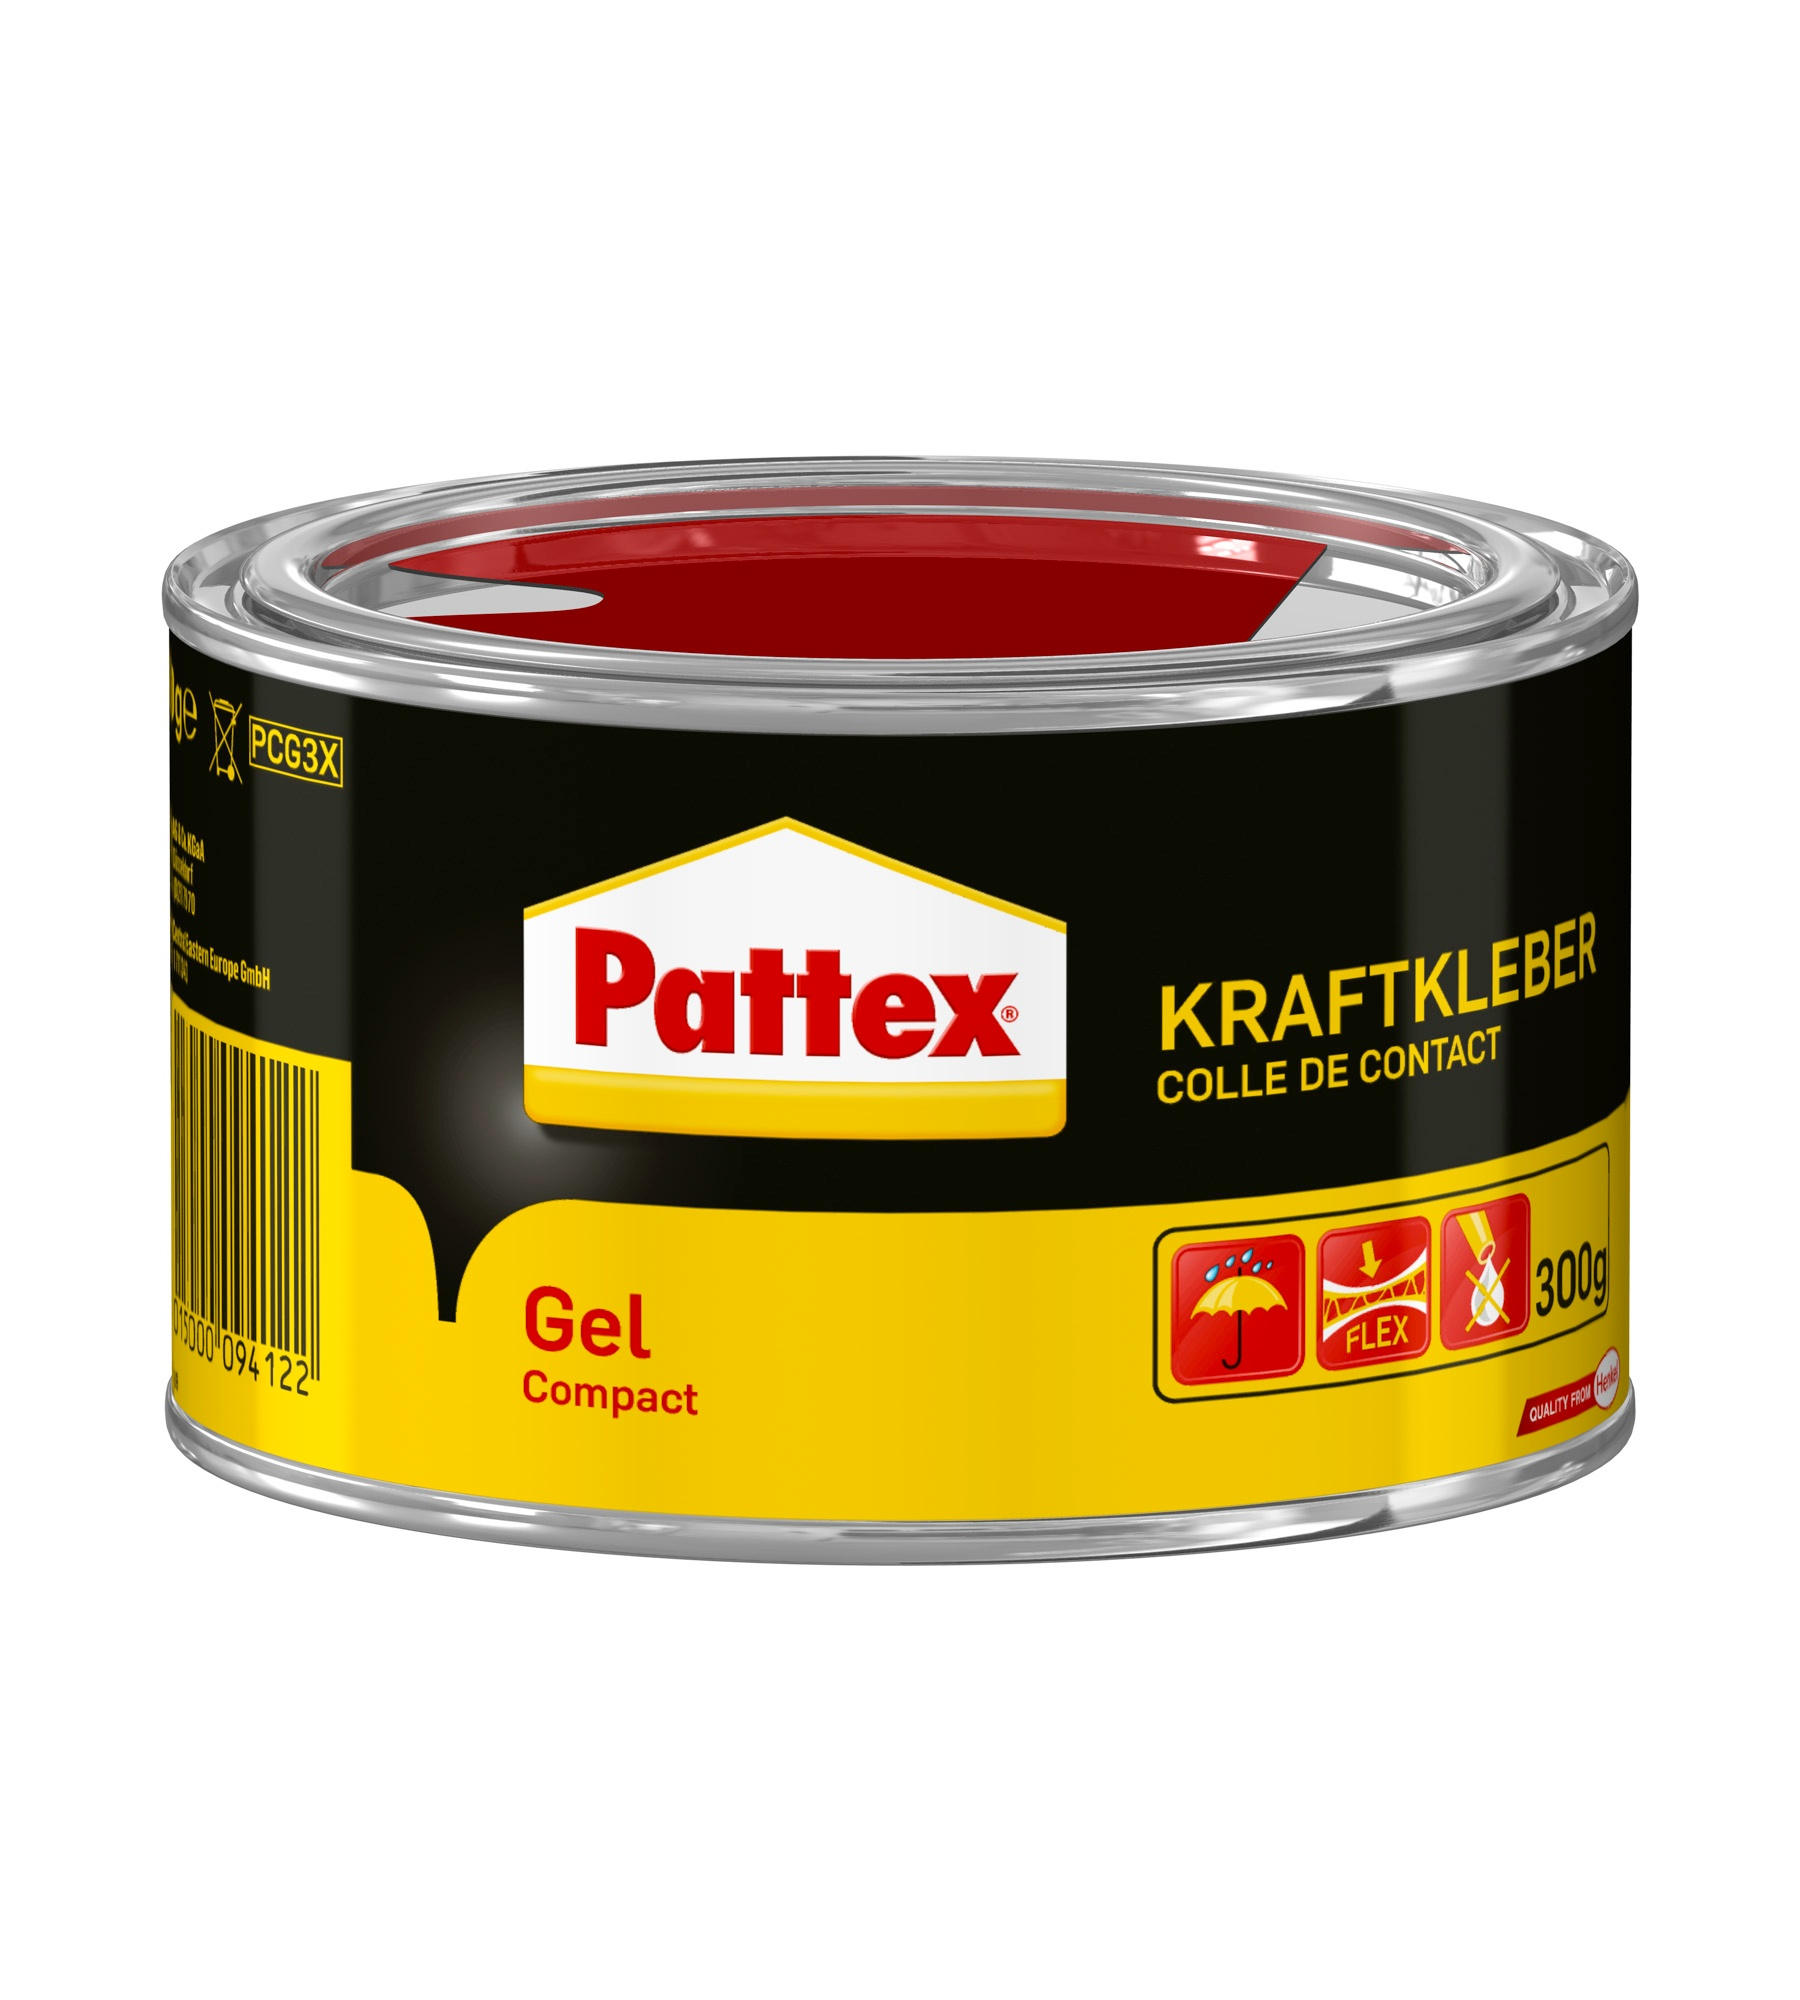 Pattex® Kraftkleber Gel Compact 300 g